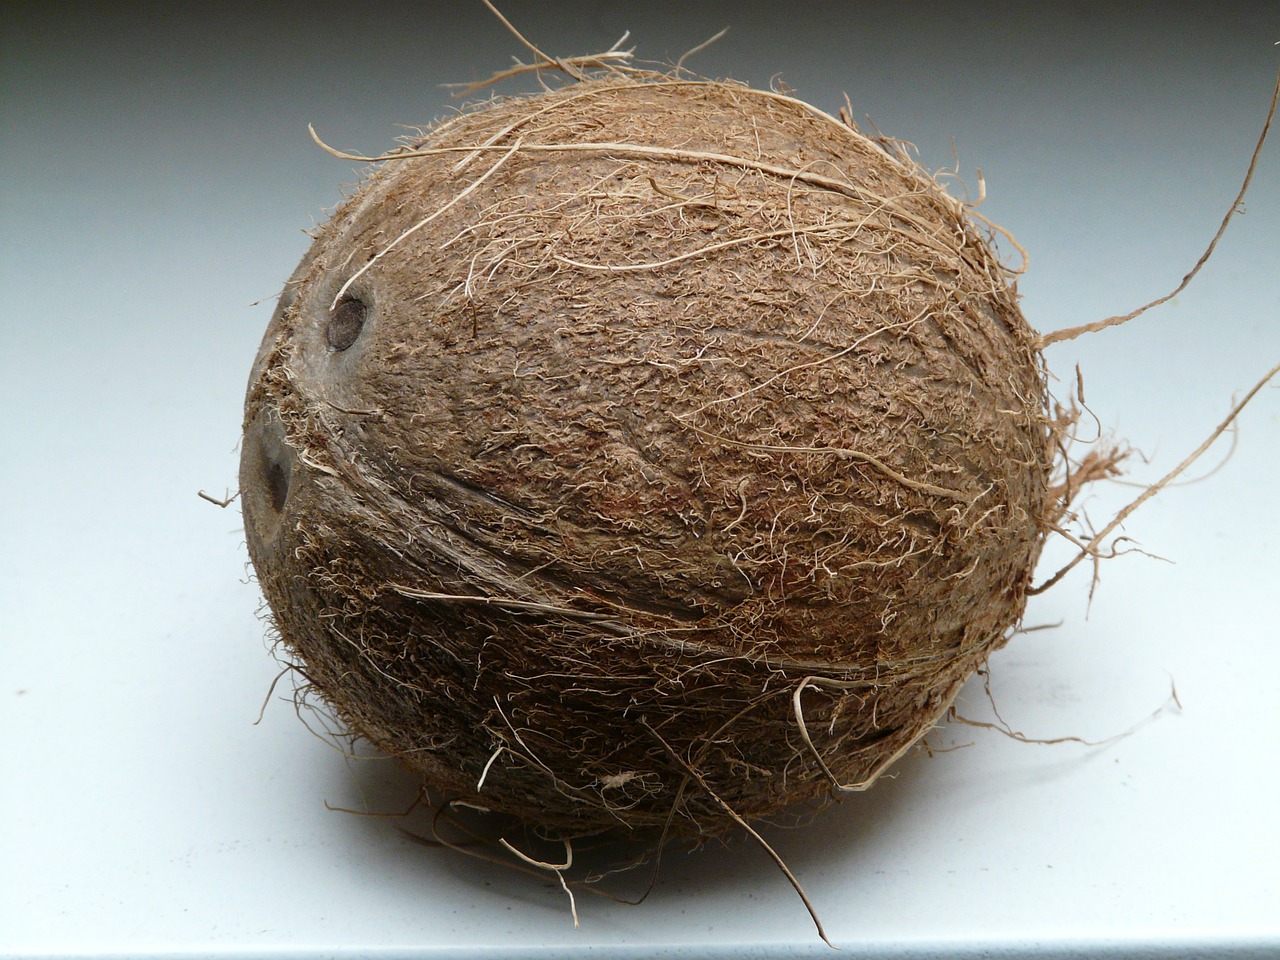 So gesund wie köstlich: die Kokosnuss